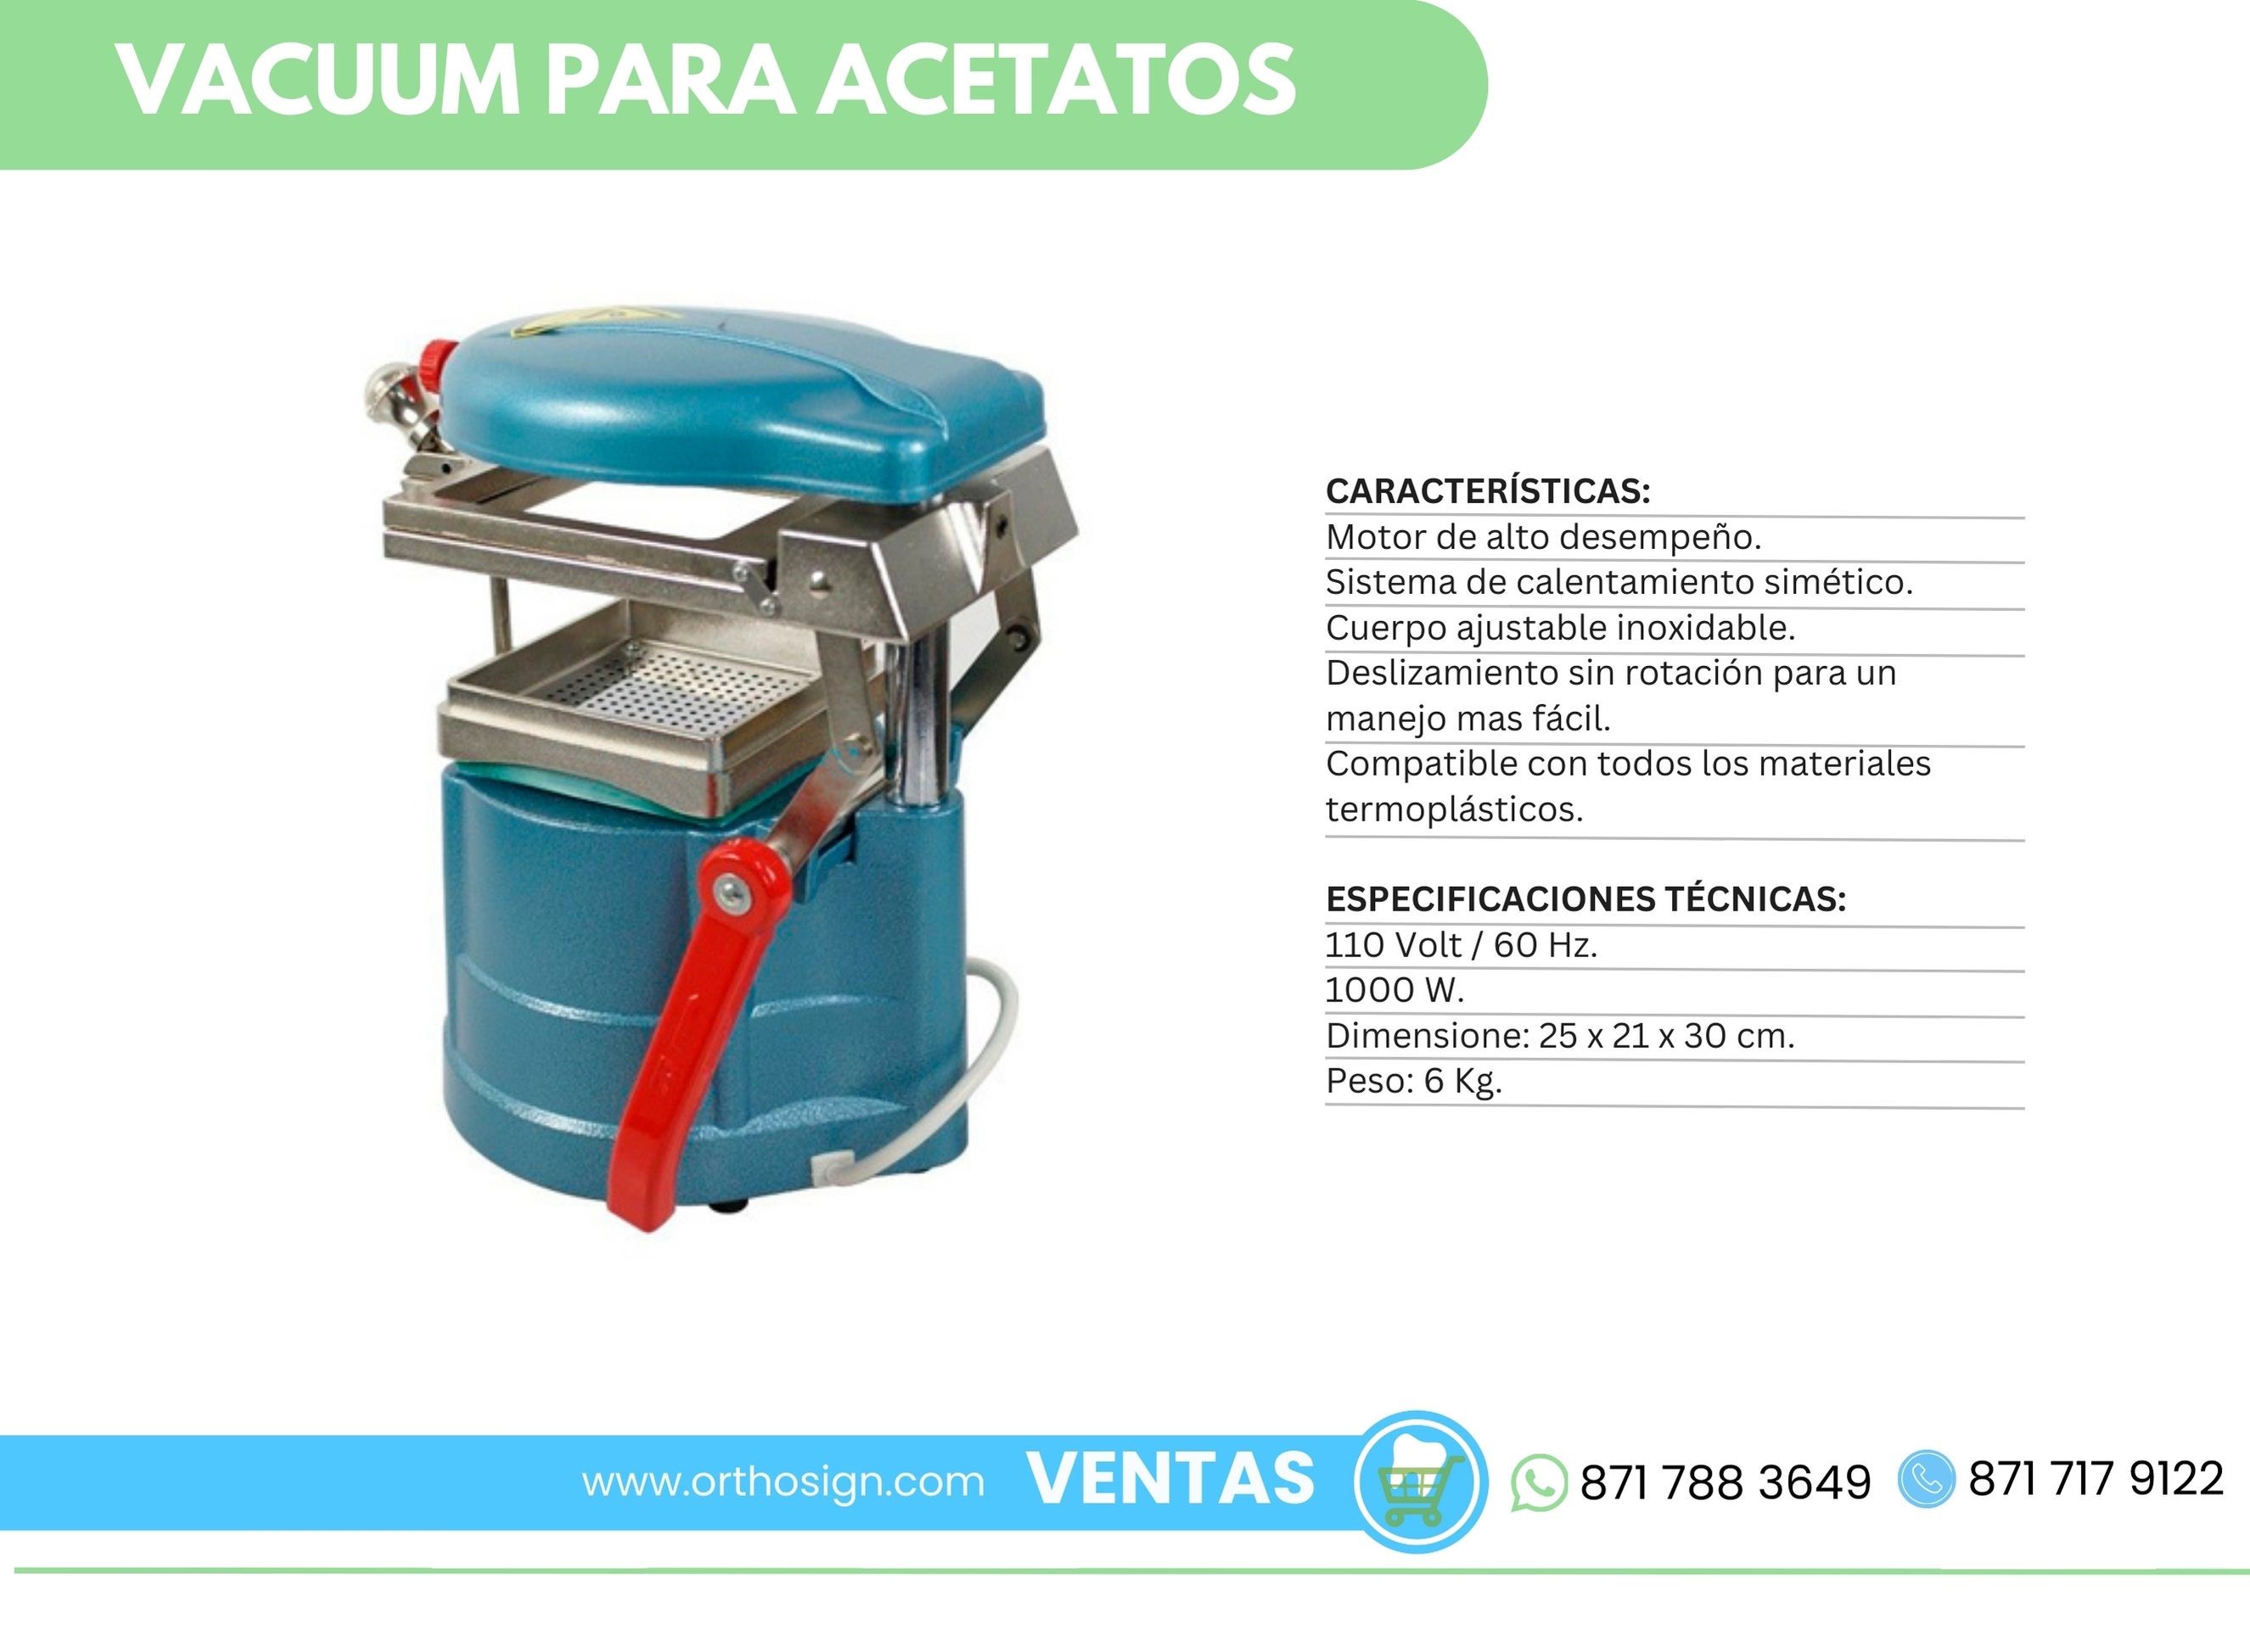 Vacuum para acetatos Orthosign